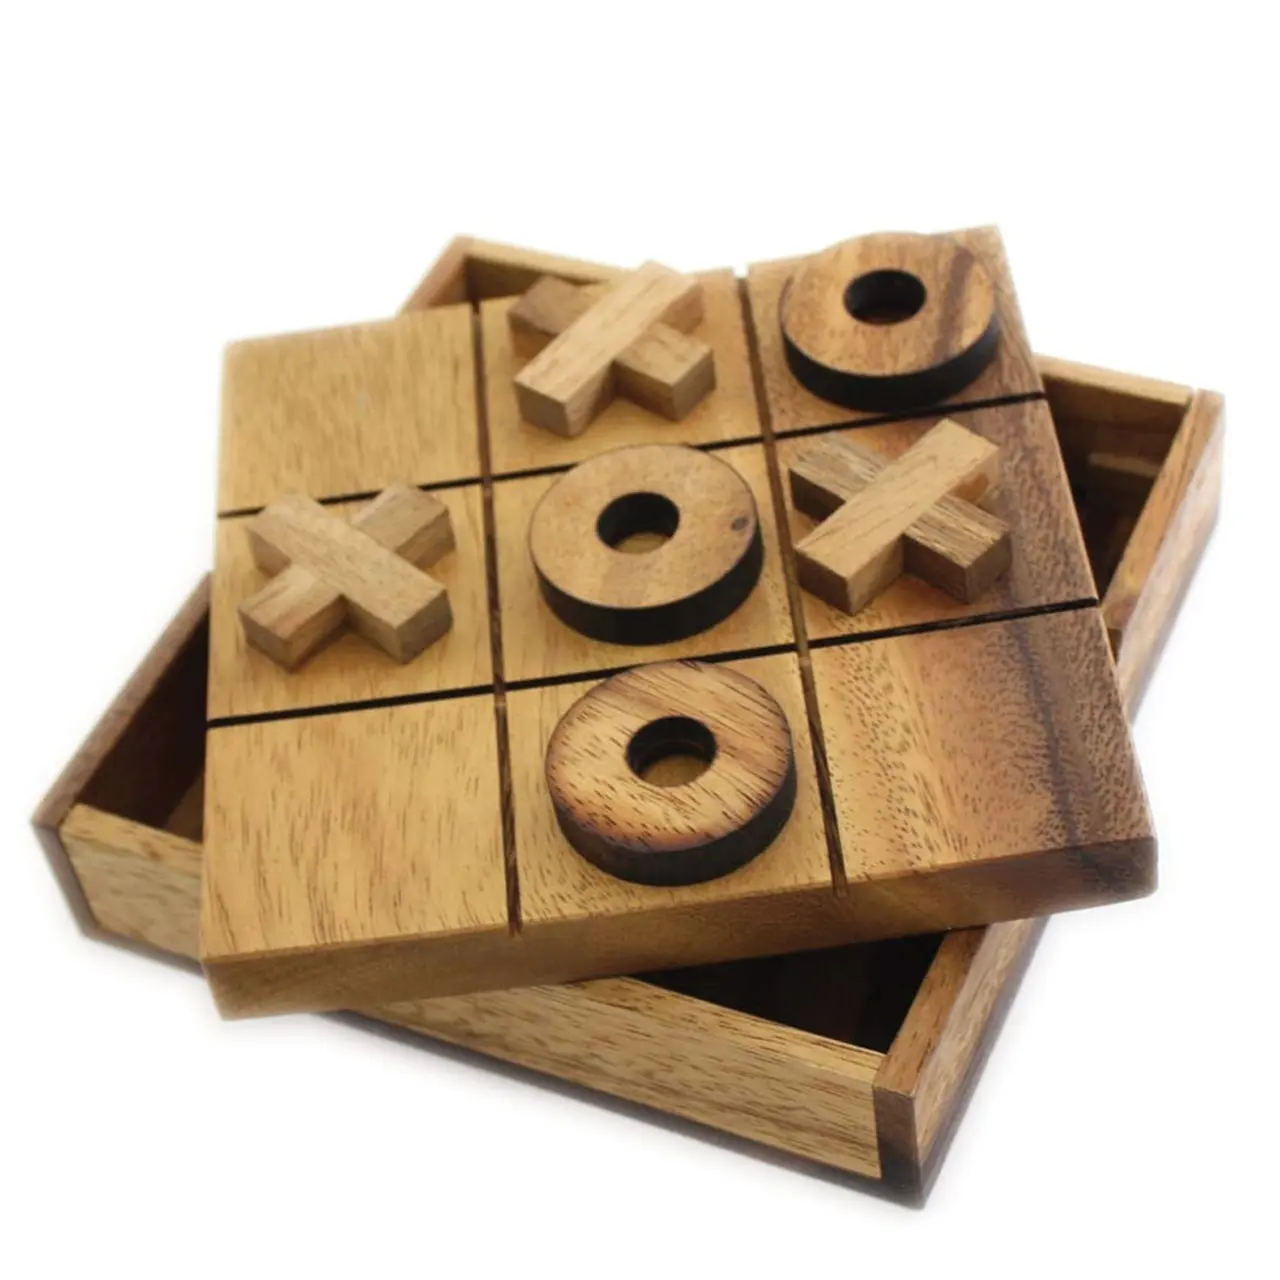 インドの手工芸品チックタックトゥ木製ボードゲームテーブルおもちゃ家の装飾的な高品質の手作り木製製品ユニークなデザイン